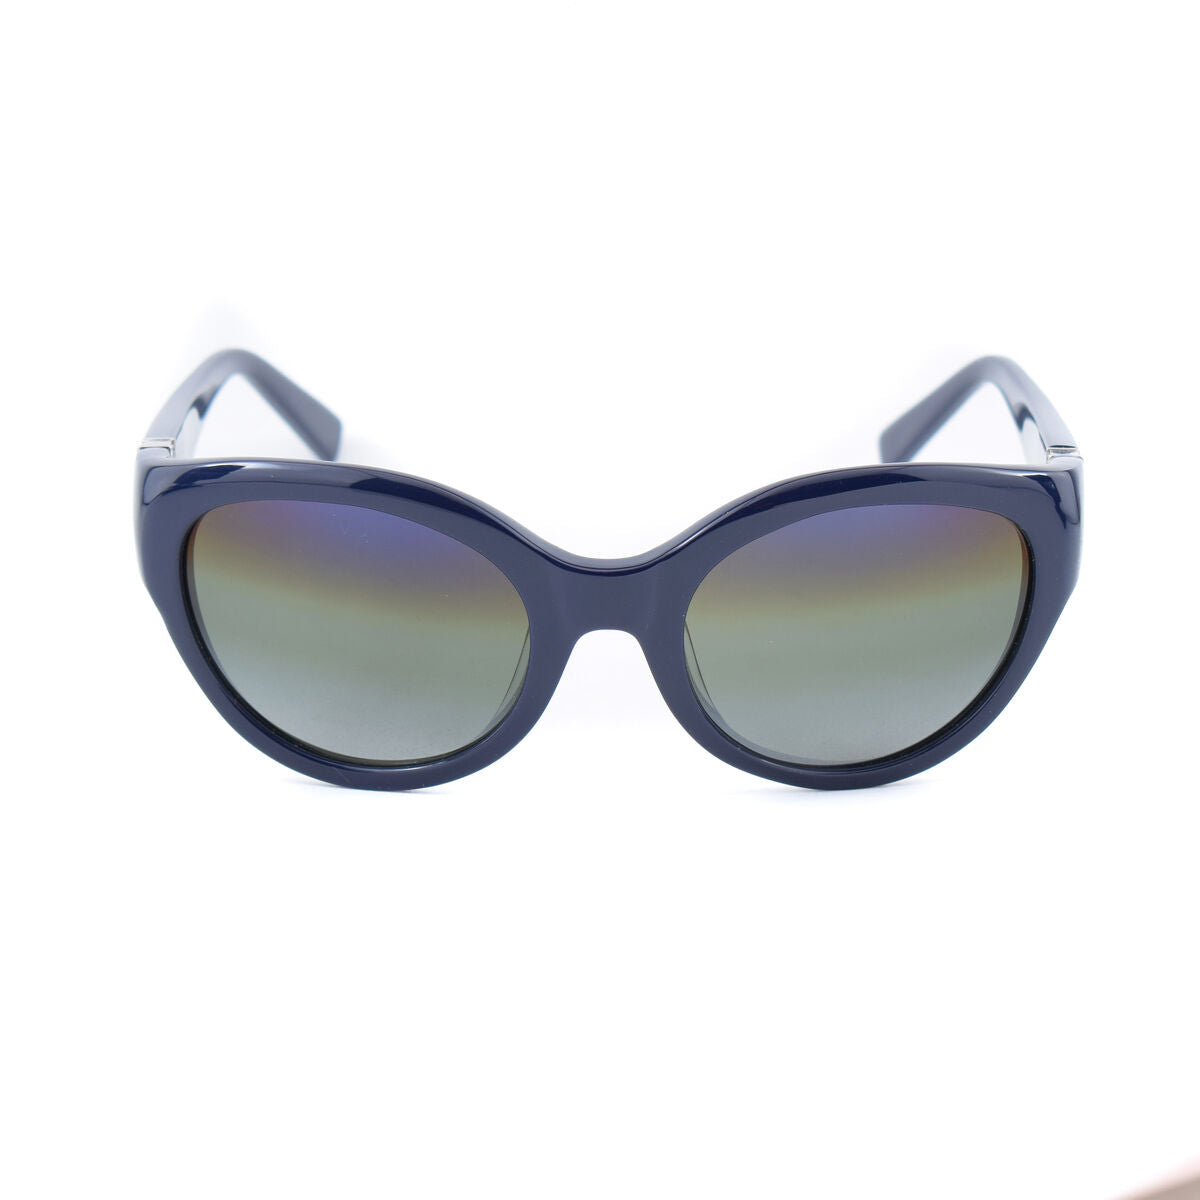 Kaufe Damensonnenbrille Vuarnet VL141000041140 Ø 50 mm bei AWK Flagship um € 49.00